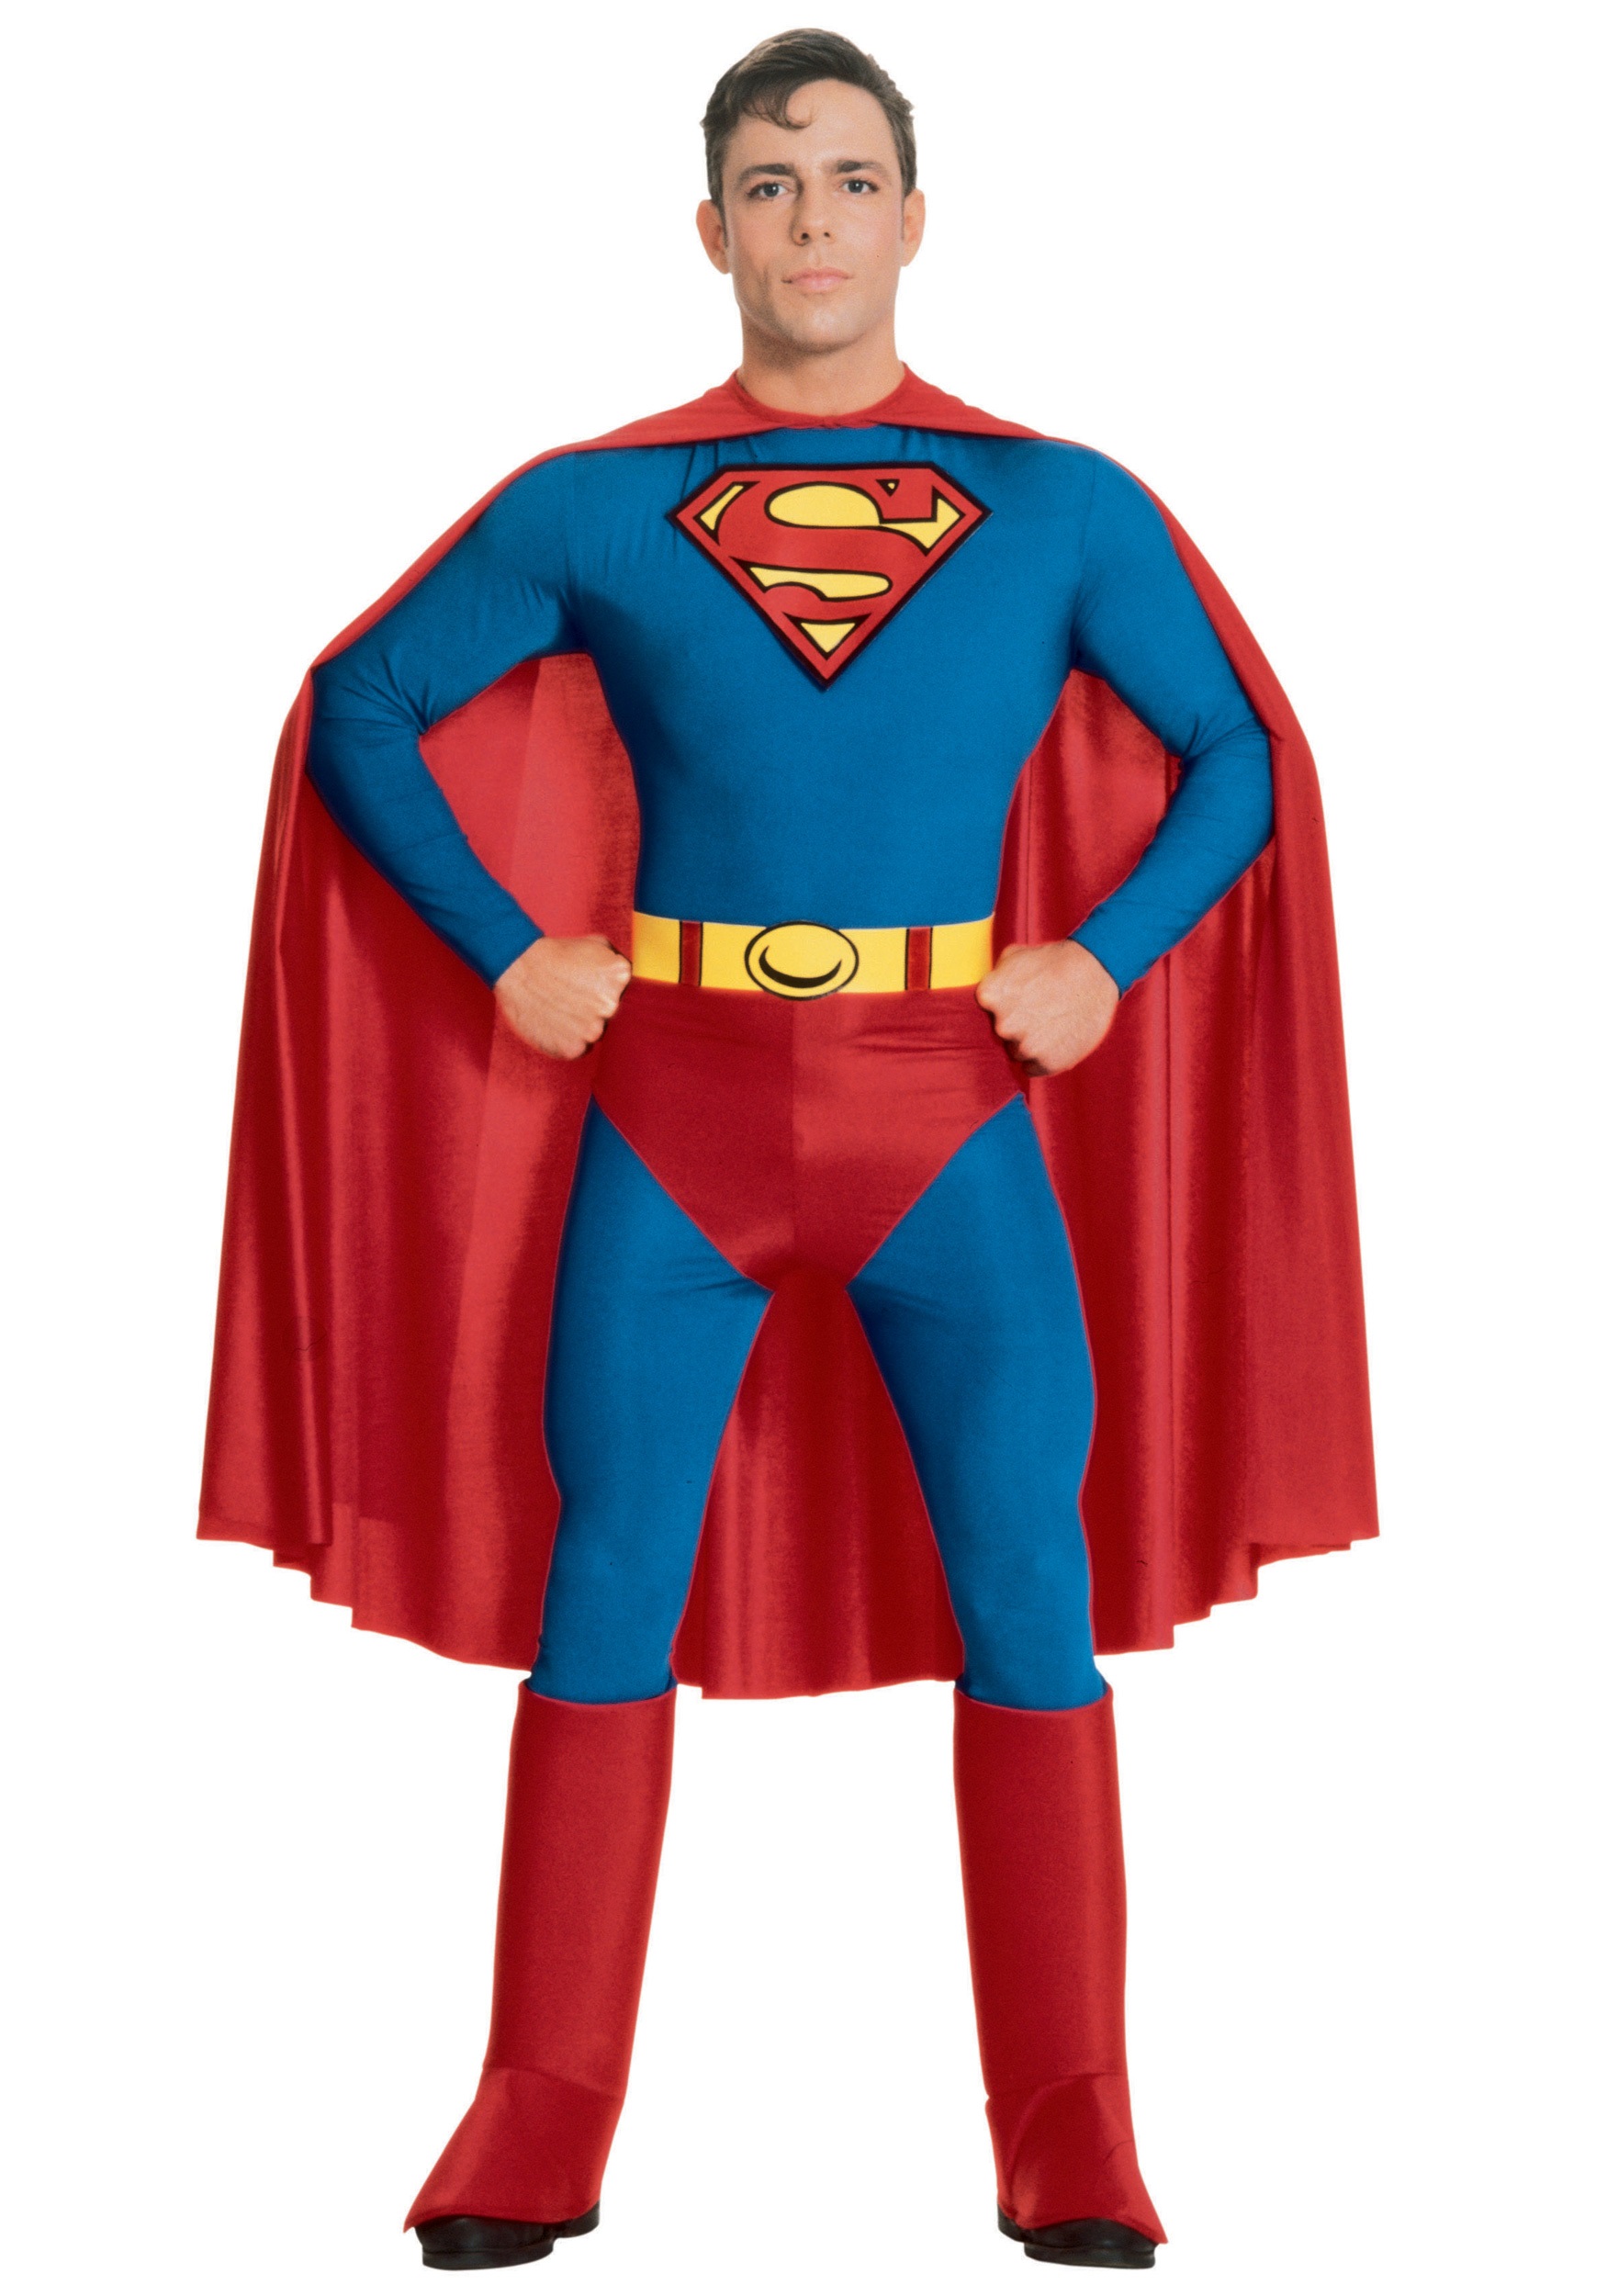 Image of Adult Superman Costume ID RU888001-S